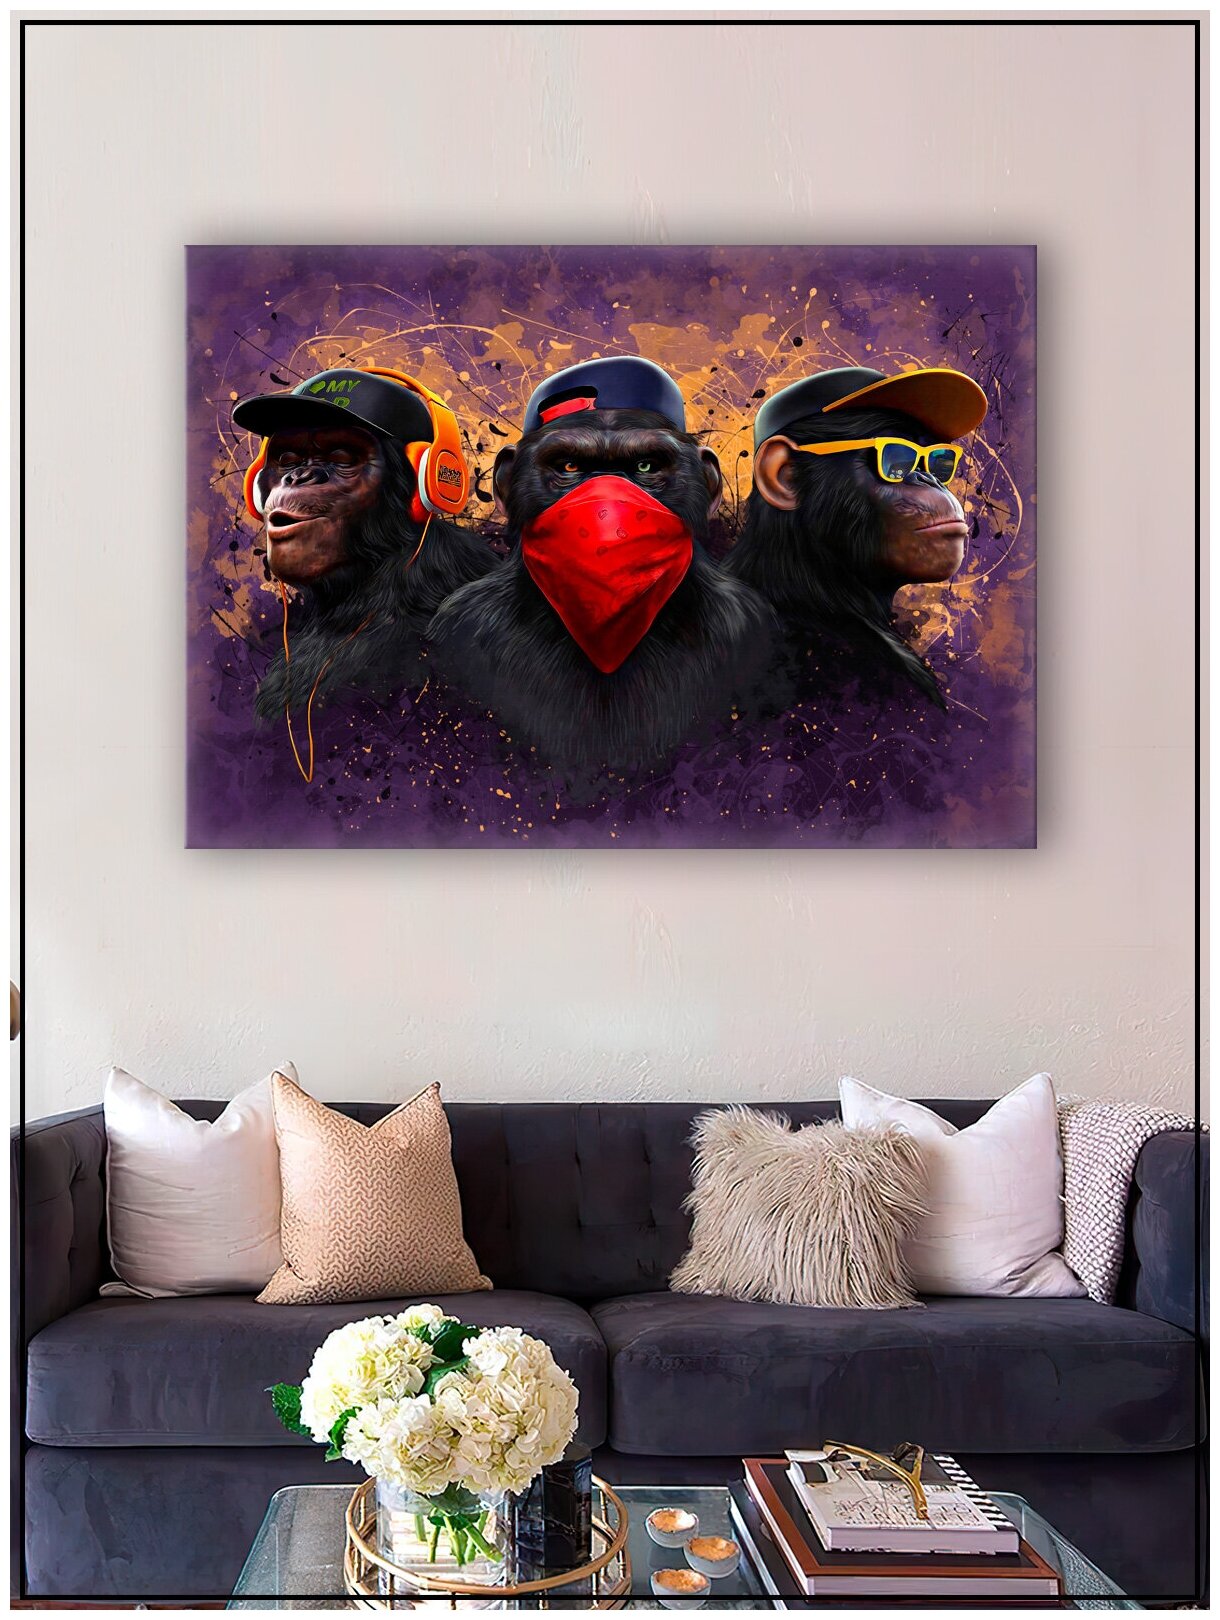 Картина для интерьера на натуральном хлопковом холсте "Три обезьяны дрим-арт", 38*55см, холст на подрамнике, картина в подарок для дома